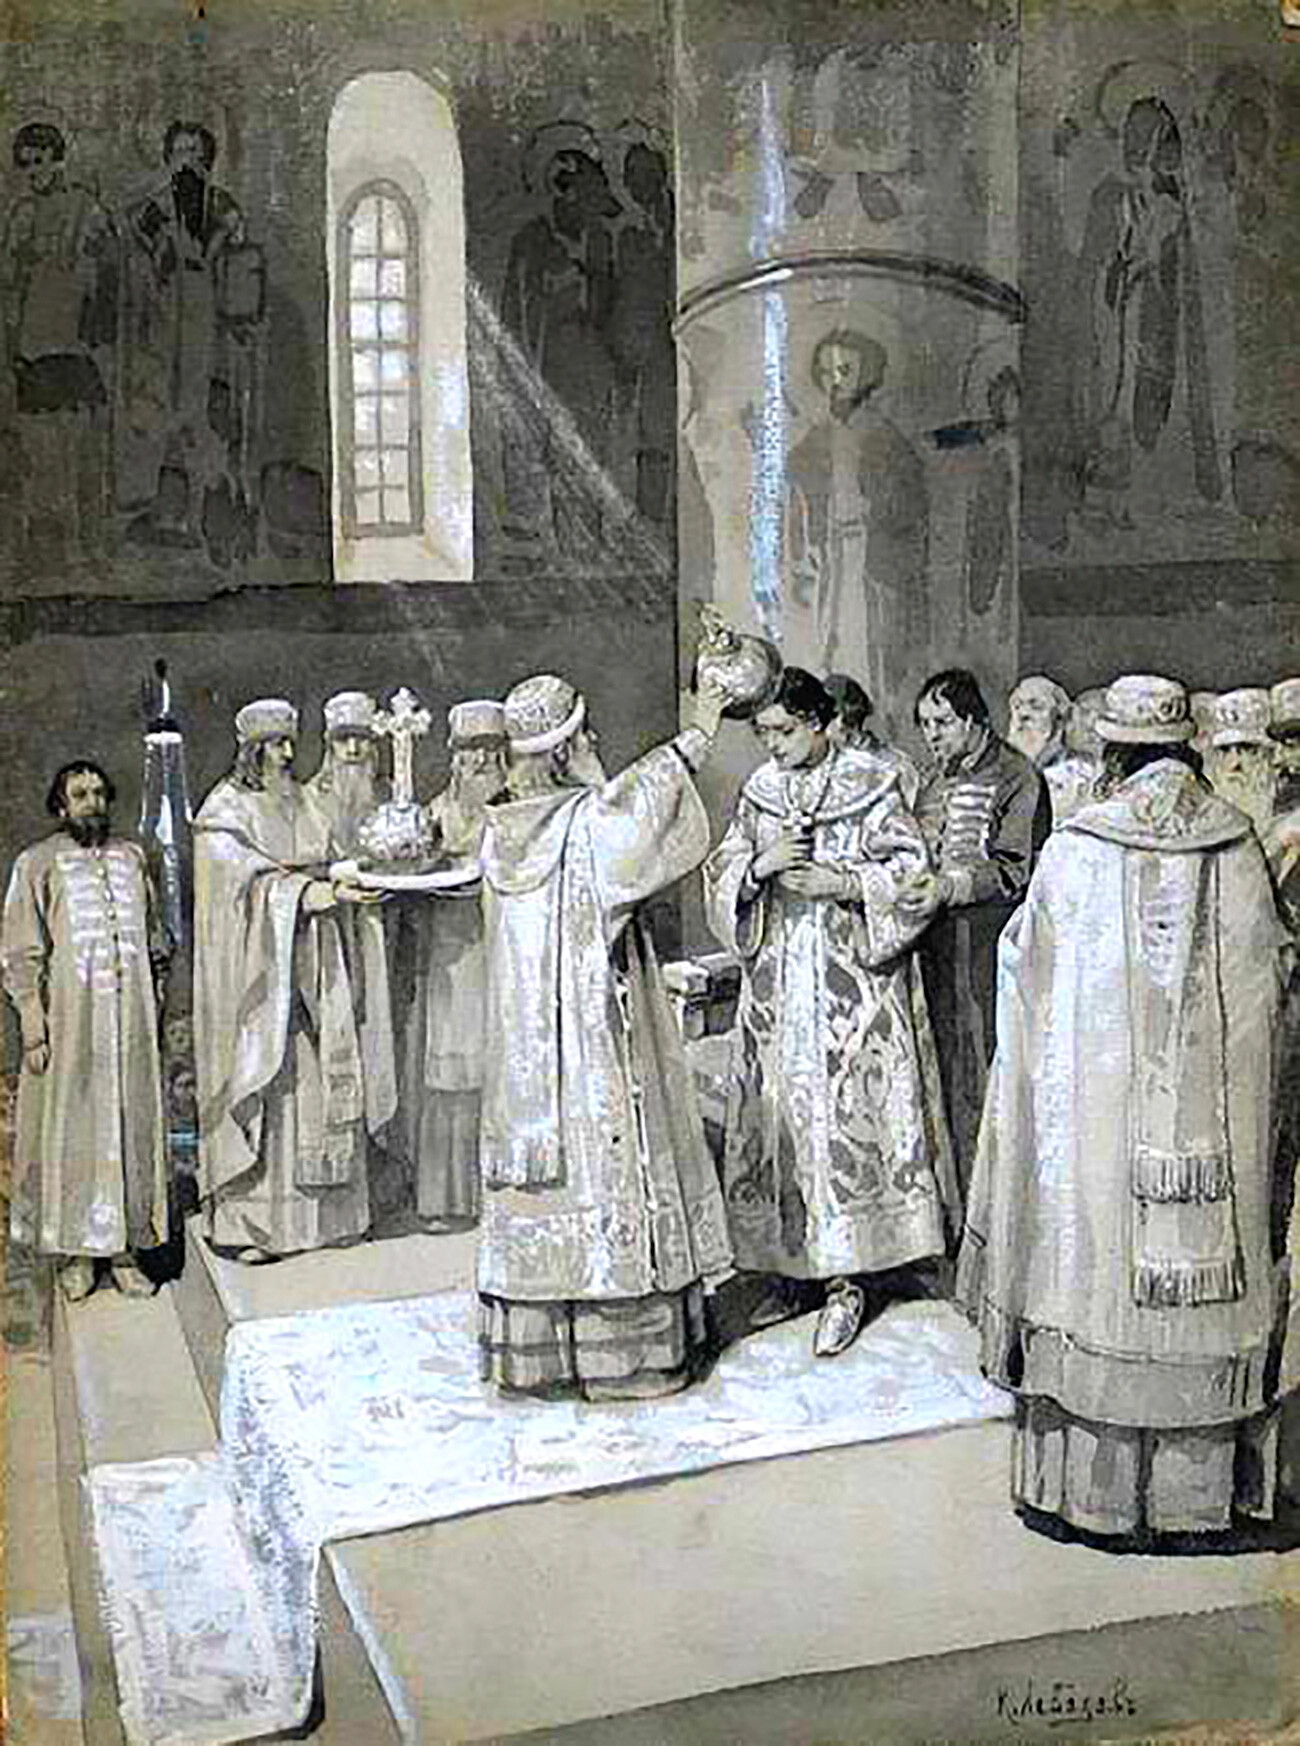 Coronación de Iván IV y asunción del título de zar 